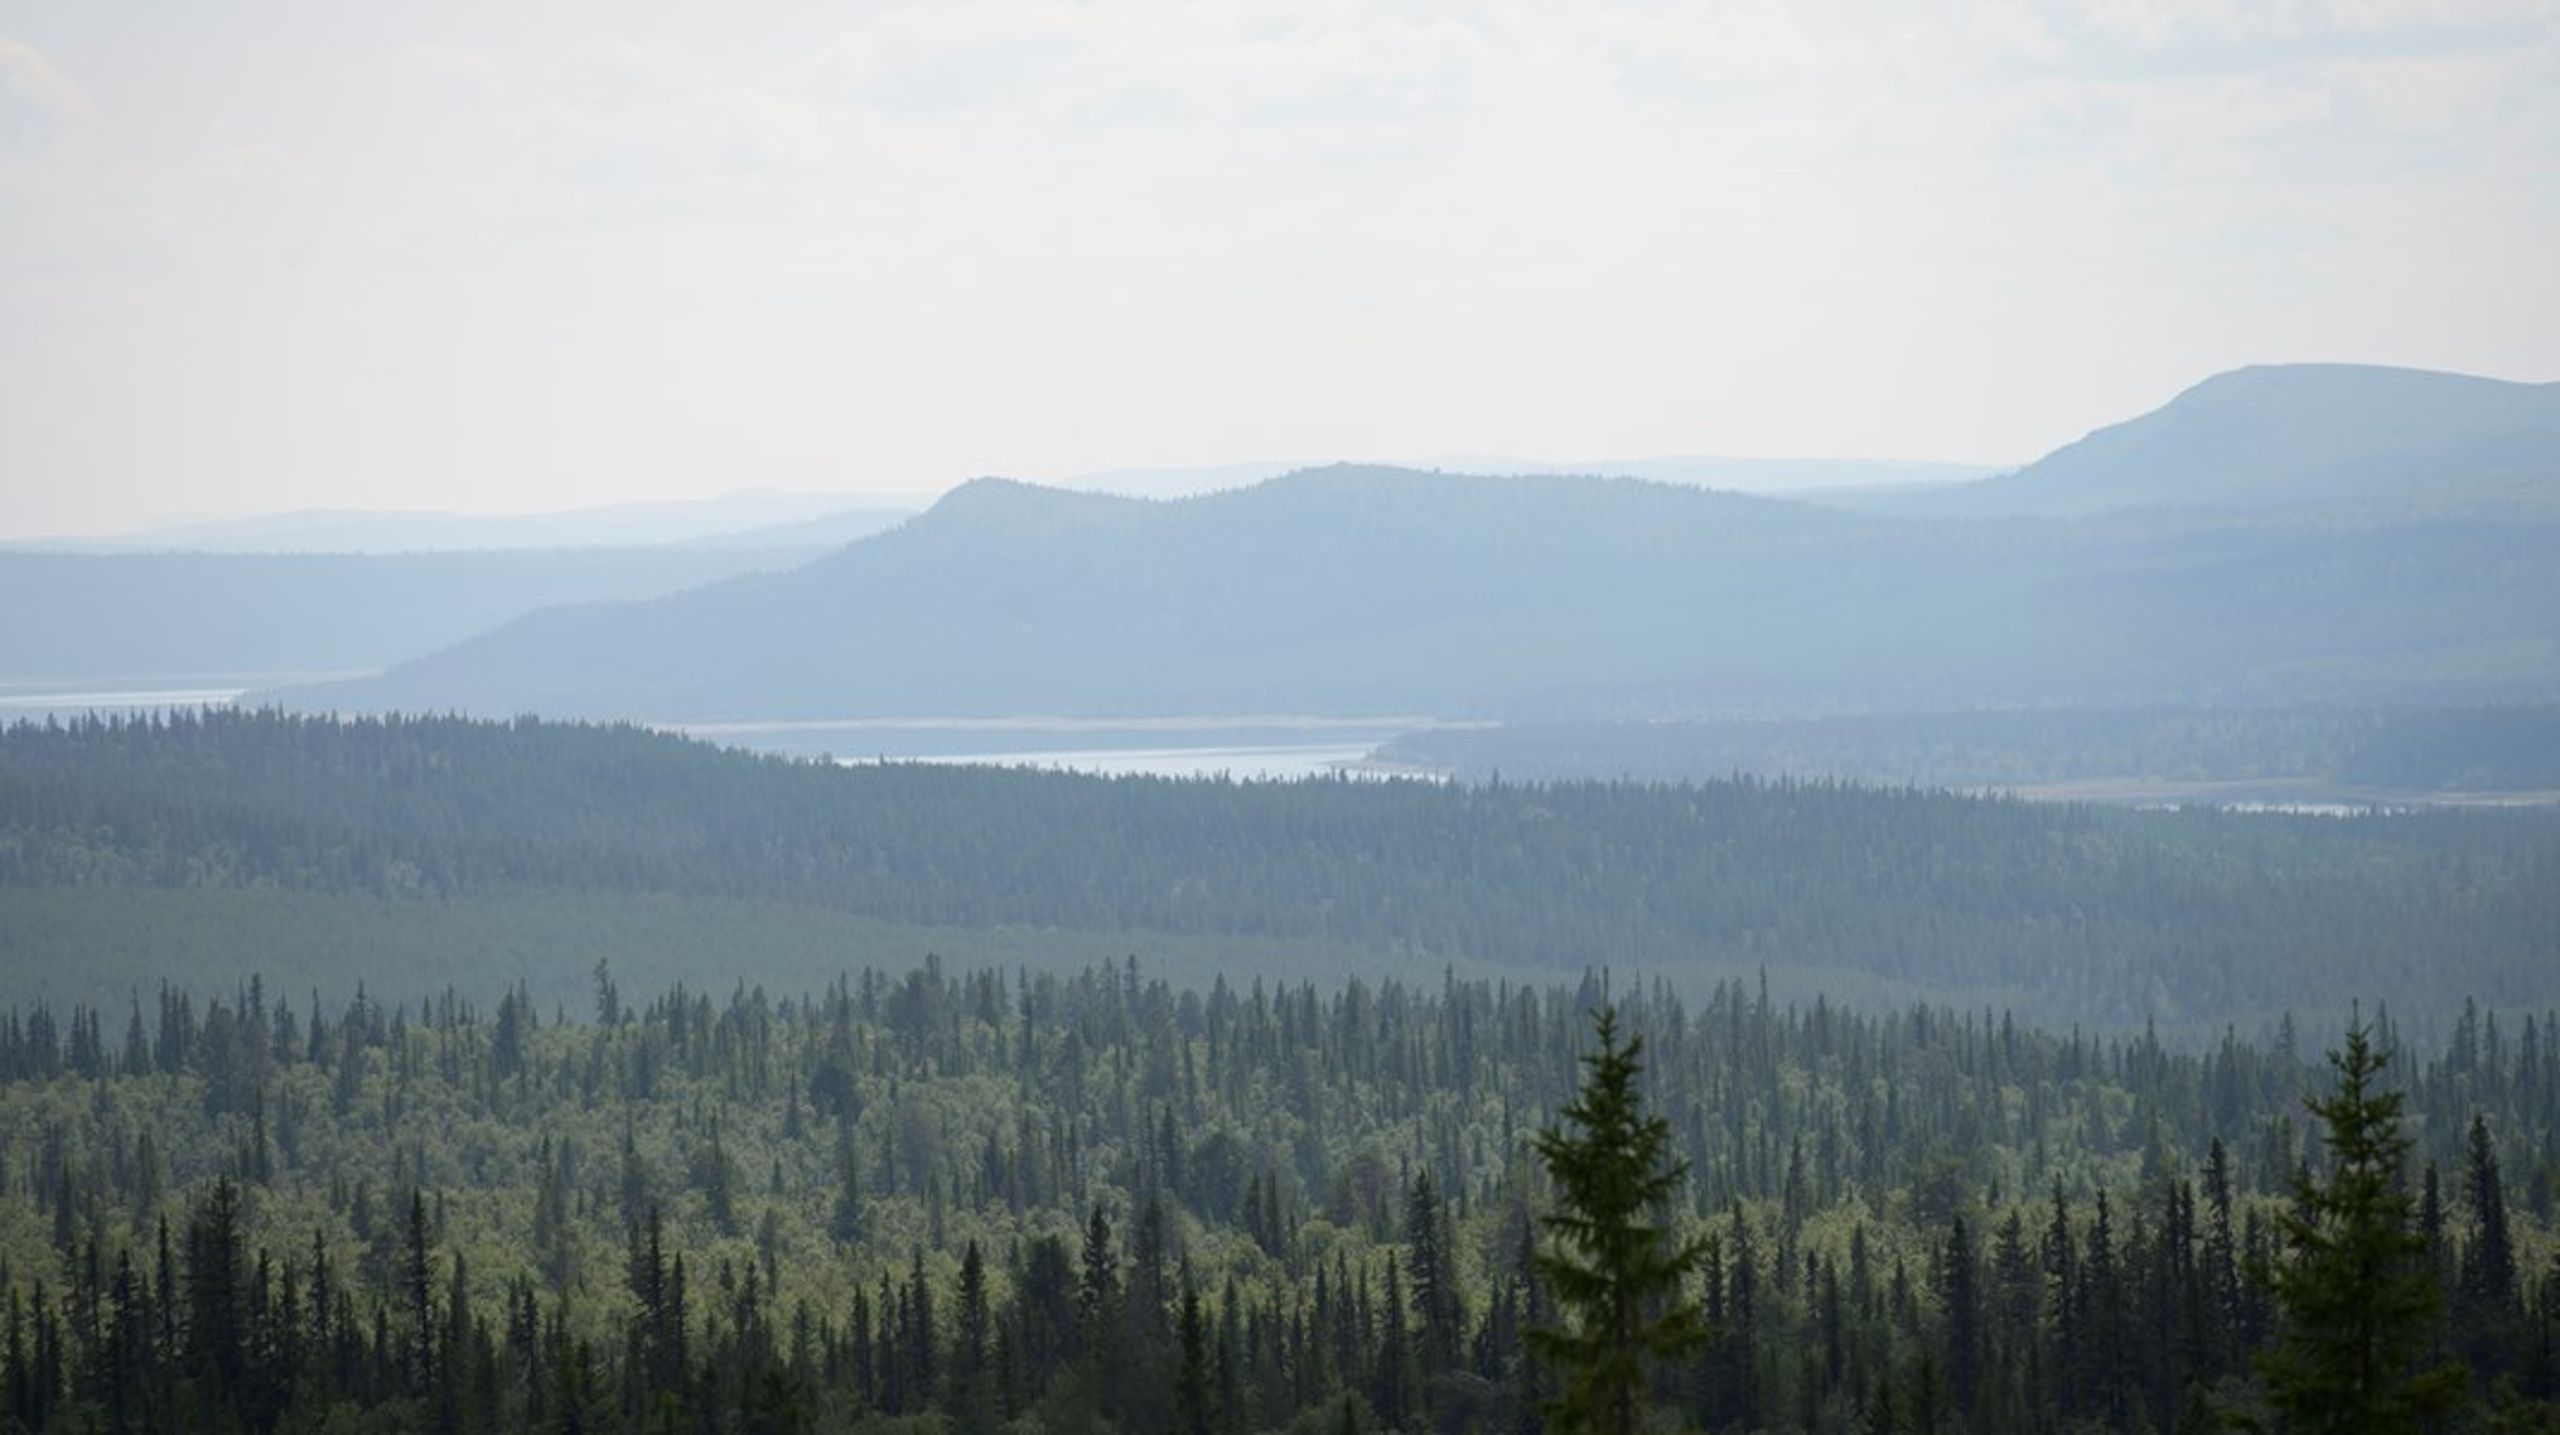 Att det nu är klart med Sveaskogs marker är mycket positivt och att bolaget bejakar de höga värdena ska de ha erkänsla för, skriver Skydda skogen.